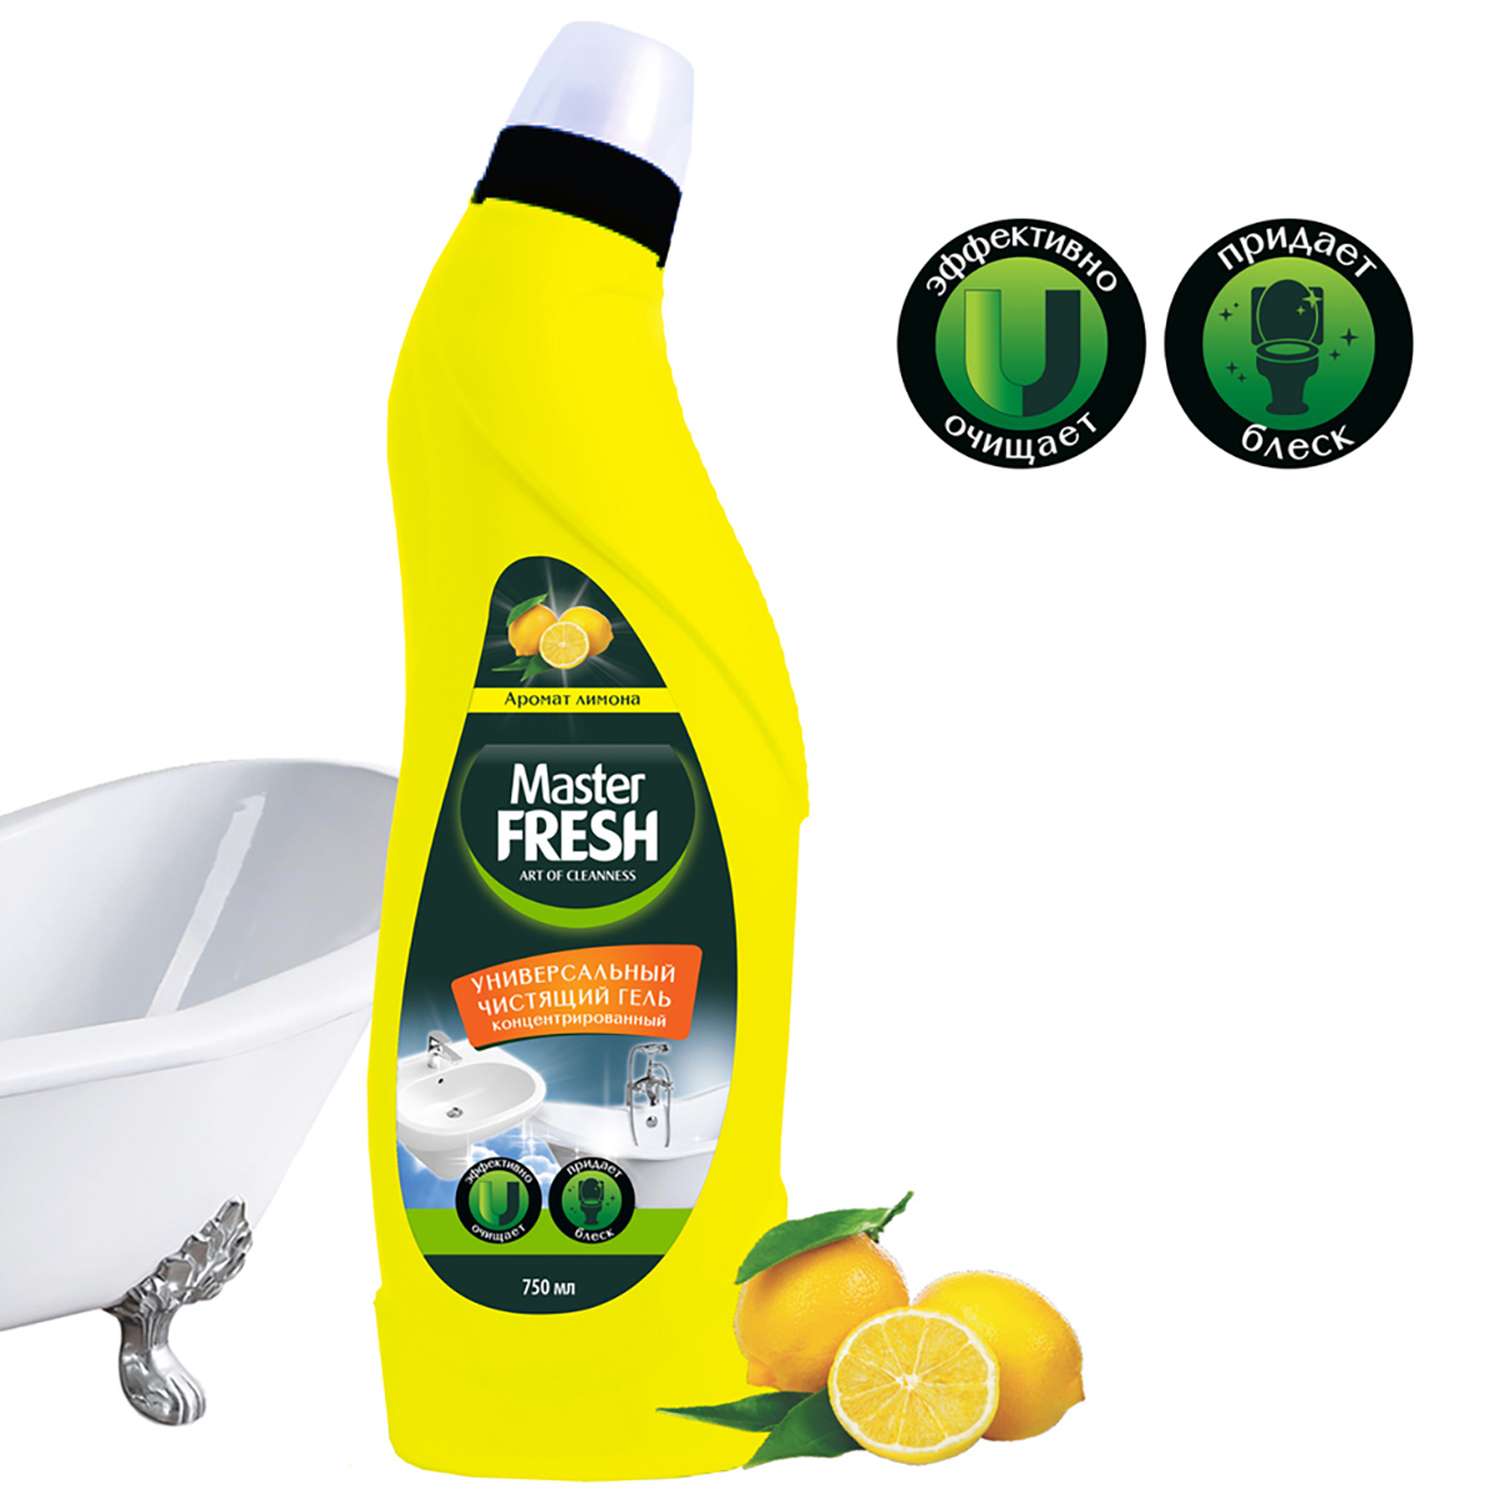 Чистящее средство Master fresh для поверхностей концентрат 750 мл лимон - фото 2